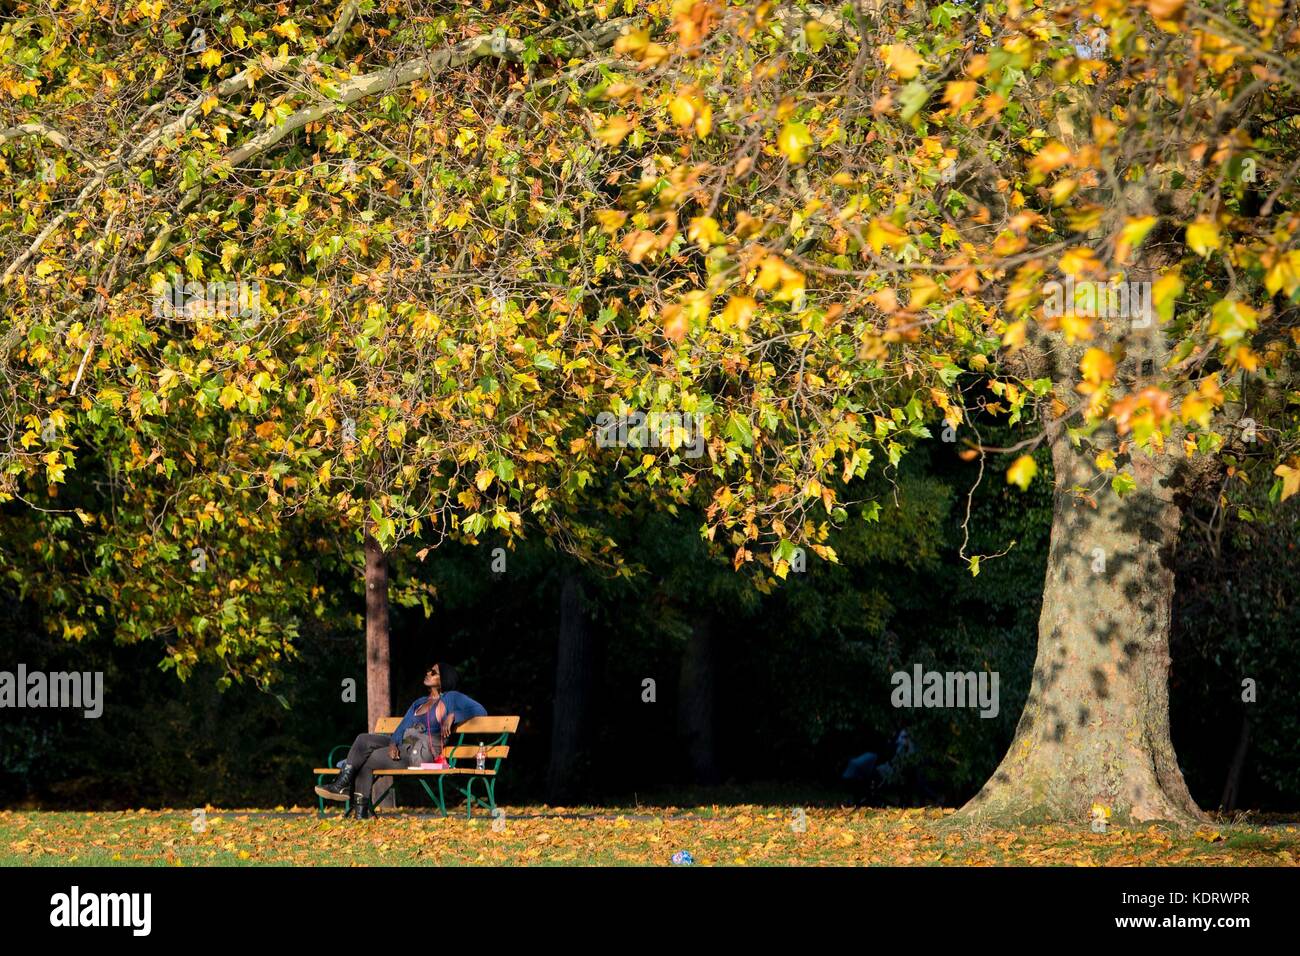 Eine Frau genießt das warme Wetter im Hilly Fields Park im Südosten Londons, da Teile Großbritanniens ein für die Jahreszeit unweigerlich warmes Wetter hatten, während sich der Orkane Ophelia dem Vereinigten Königreich und Irland nähert. Stockfoto